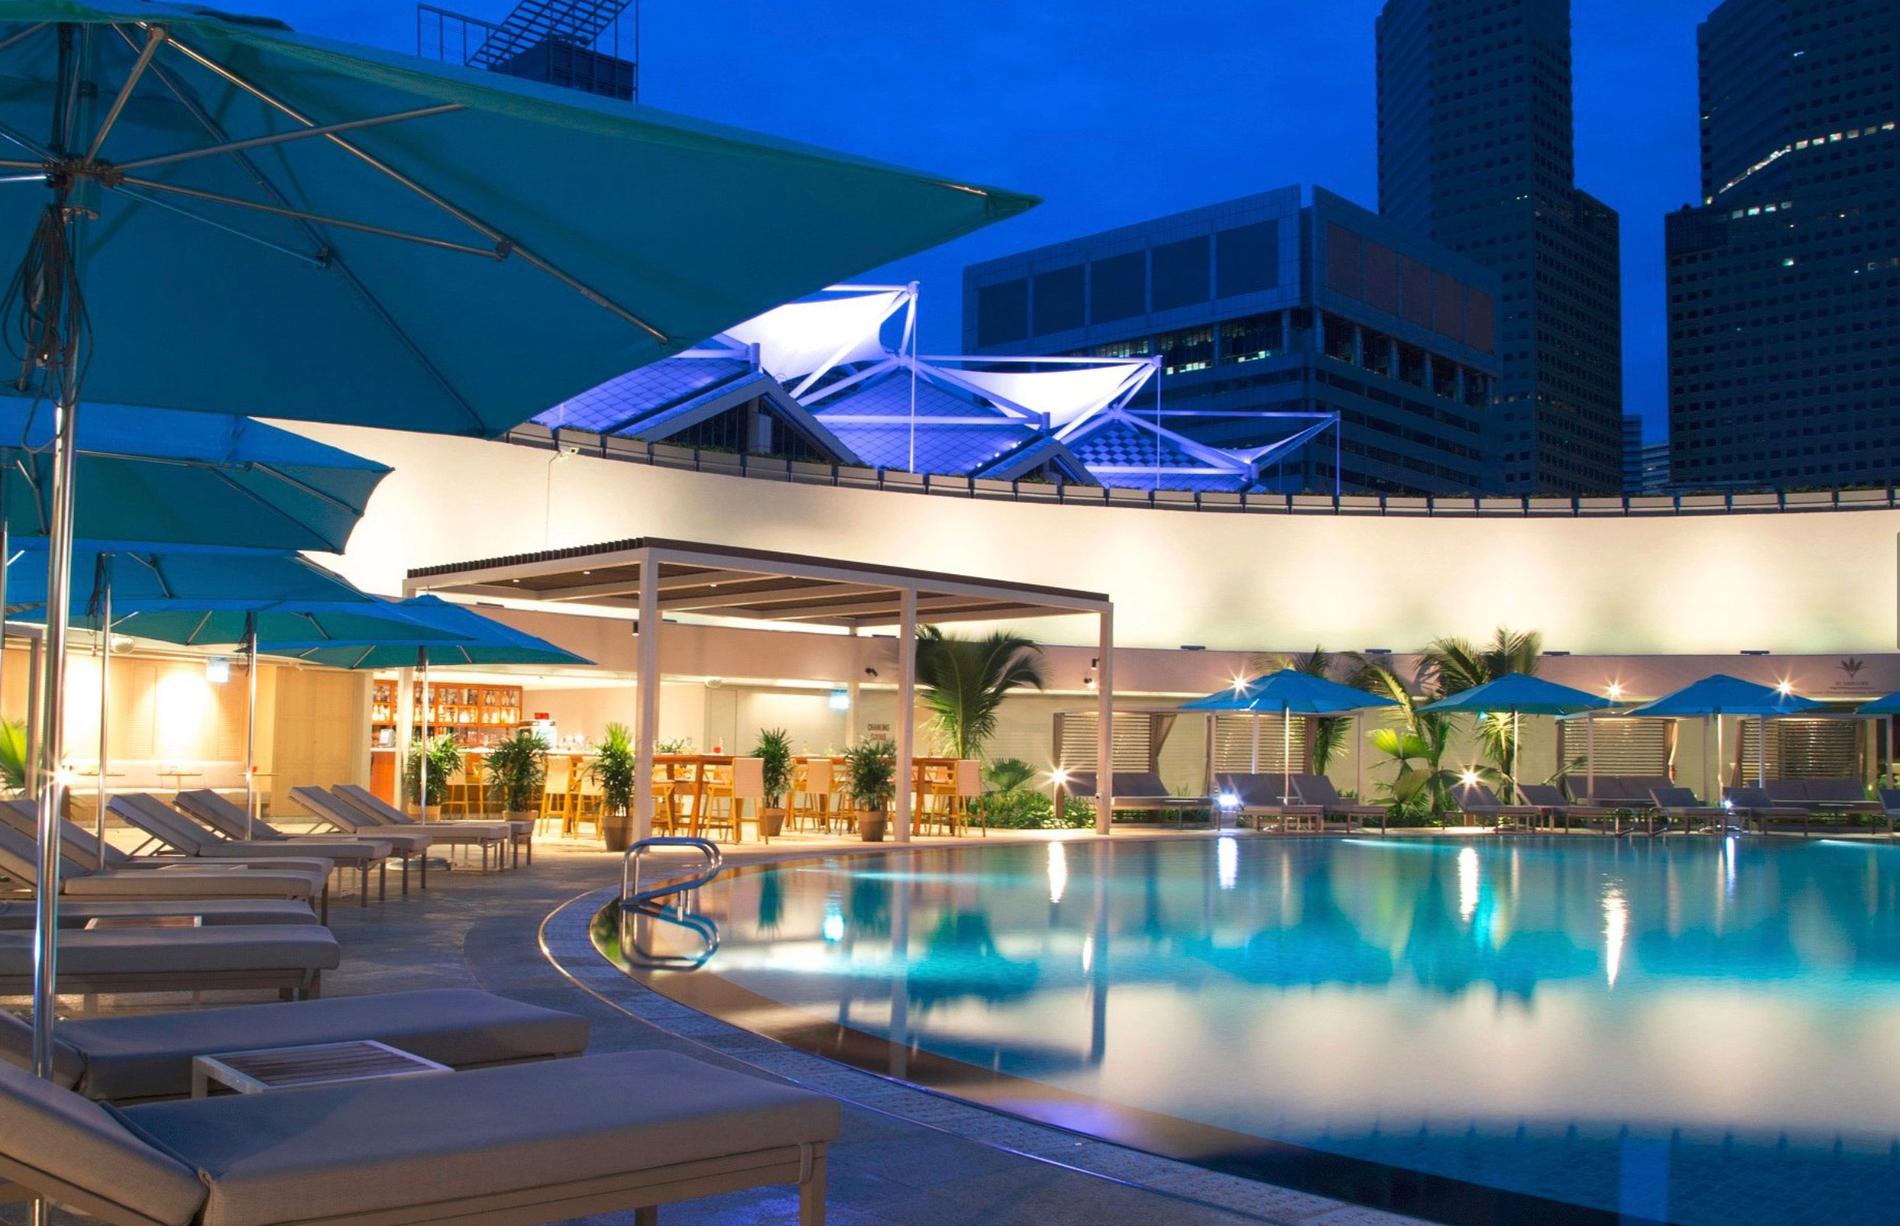 På det femstjärniga lyxhotellet Pan Pacific i Singapore bodde Patrick Reslow i en svit på 79 kvadratmeter. Enligt hotellet var det bokat för hela hans familj - men skattebetalarna stod för hela notan. 